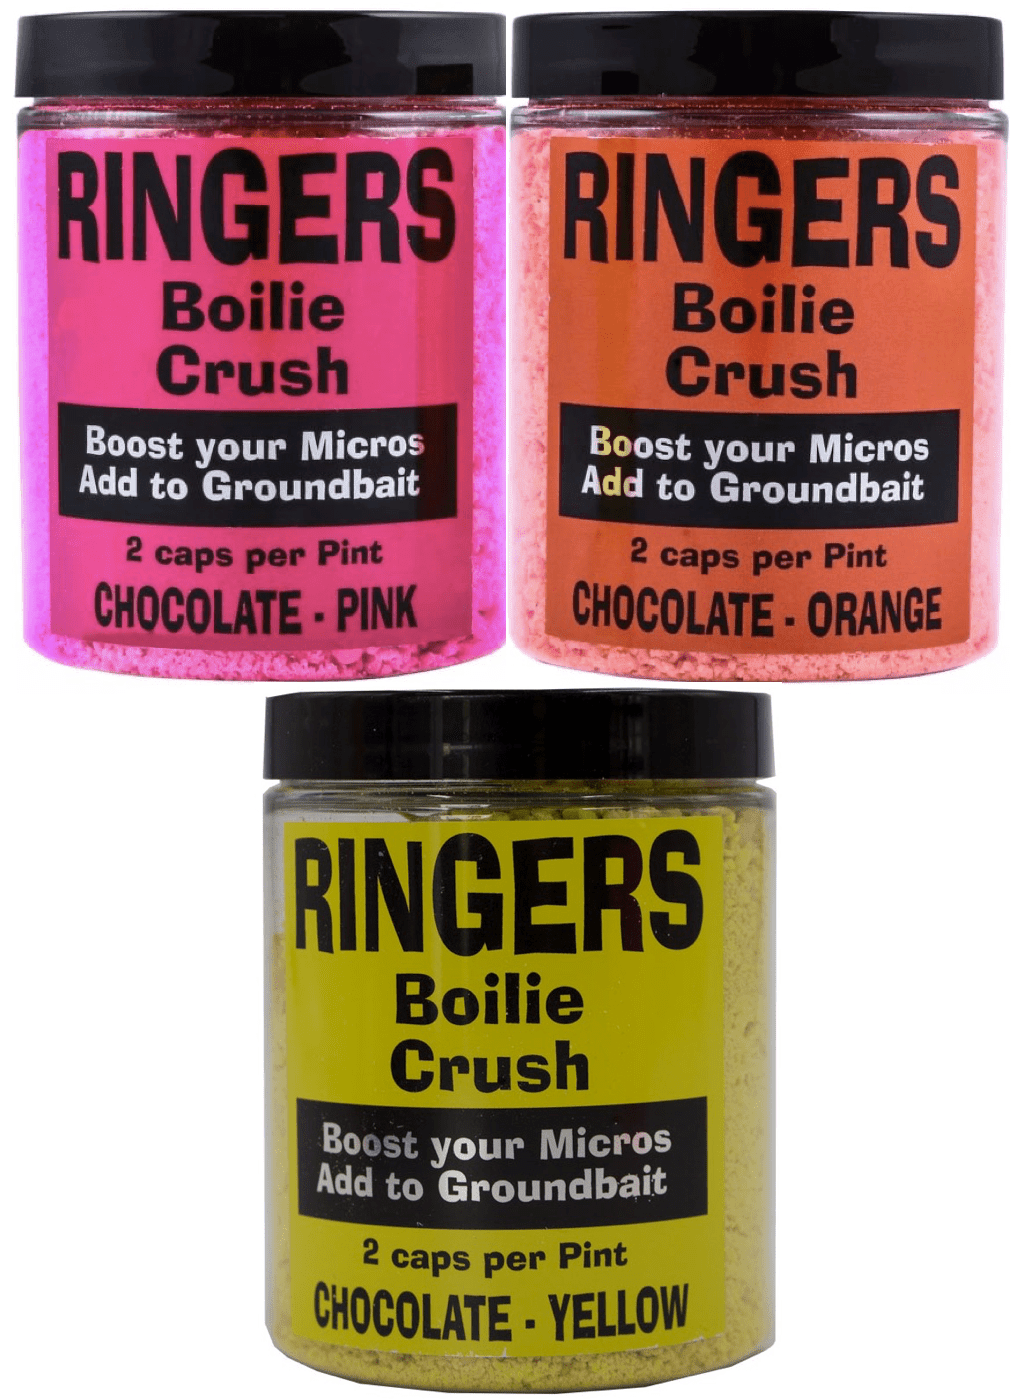 Ringers boile crush